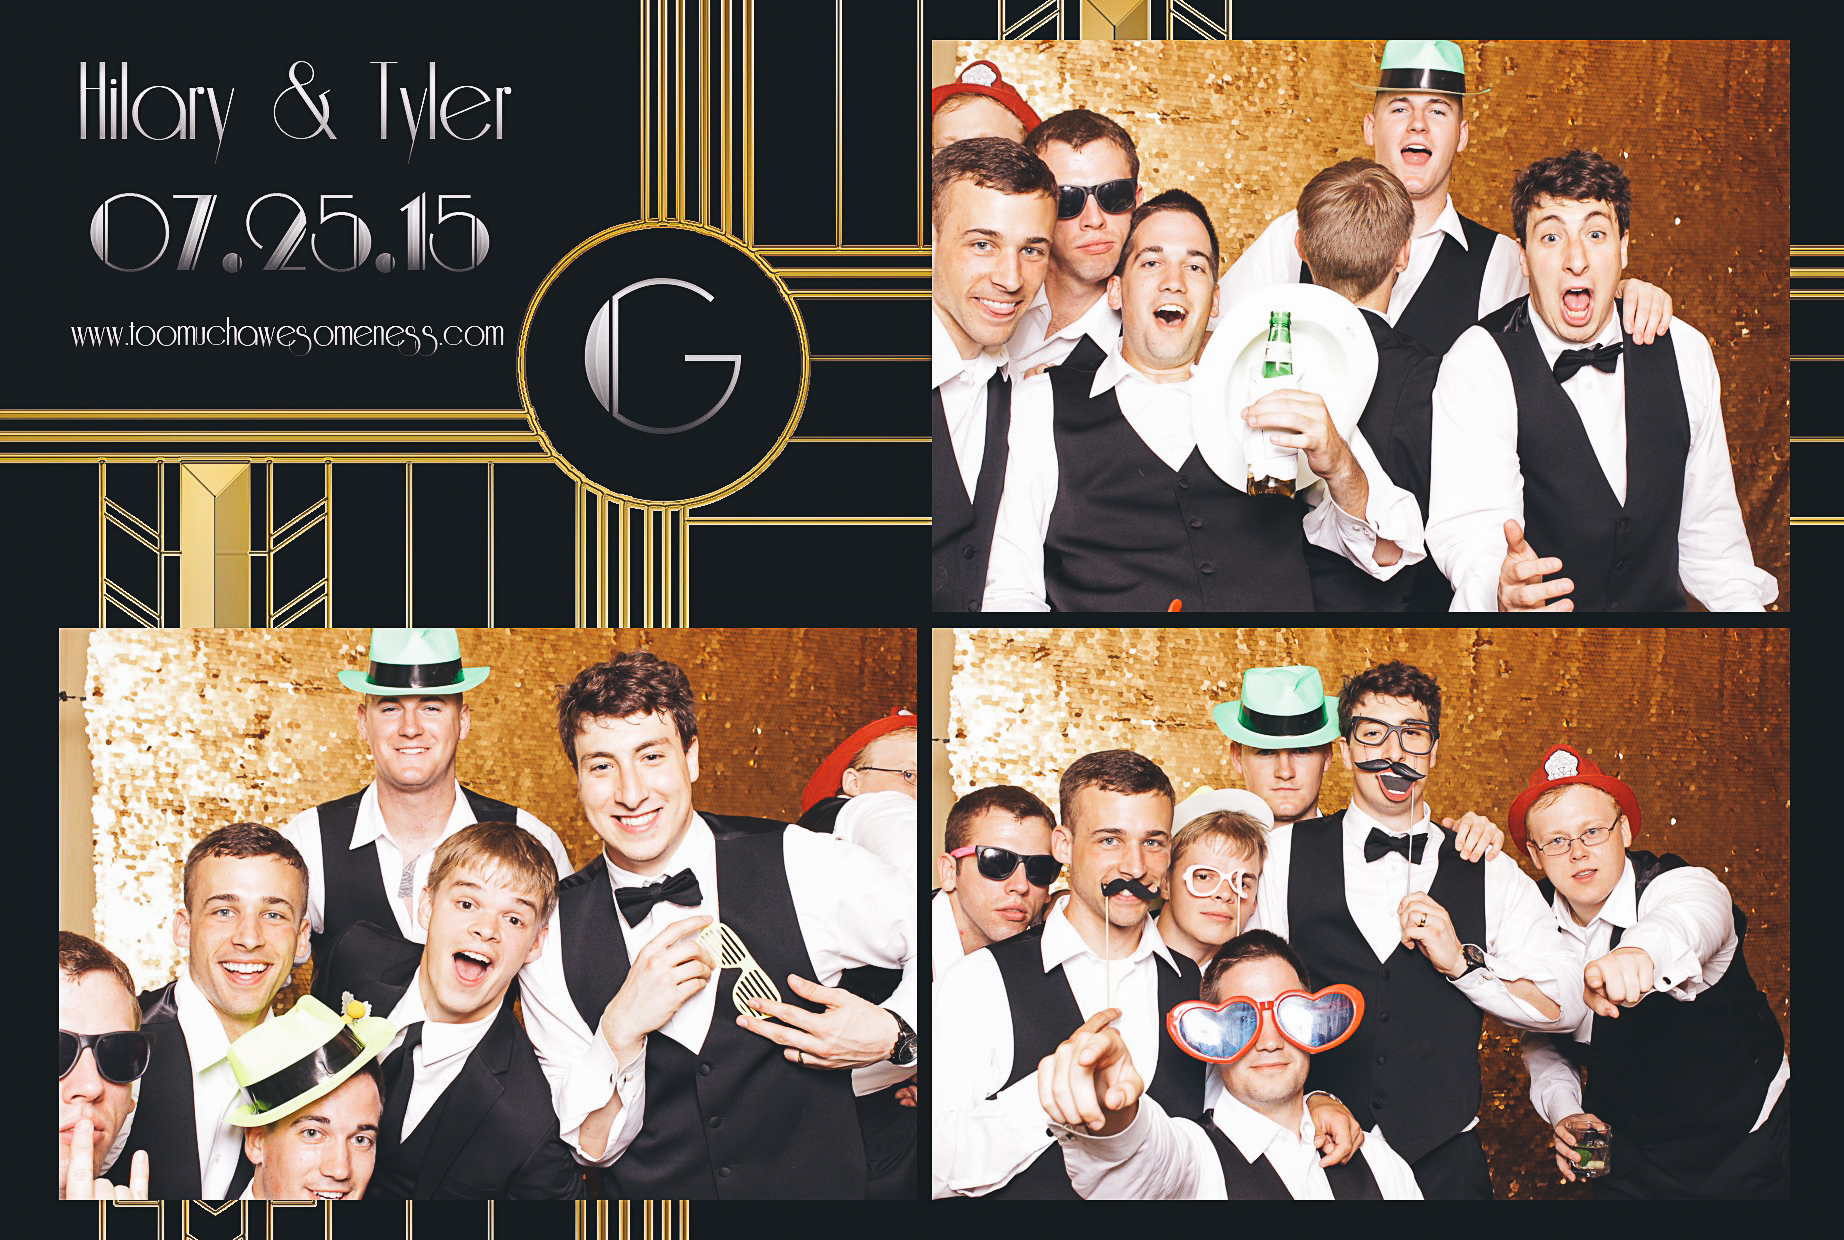 00012-Wydham Hotel Wedding Photobooth-20150725.jpg